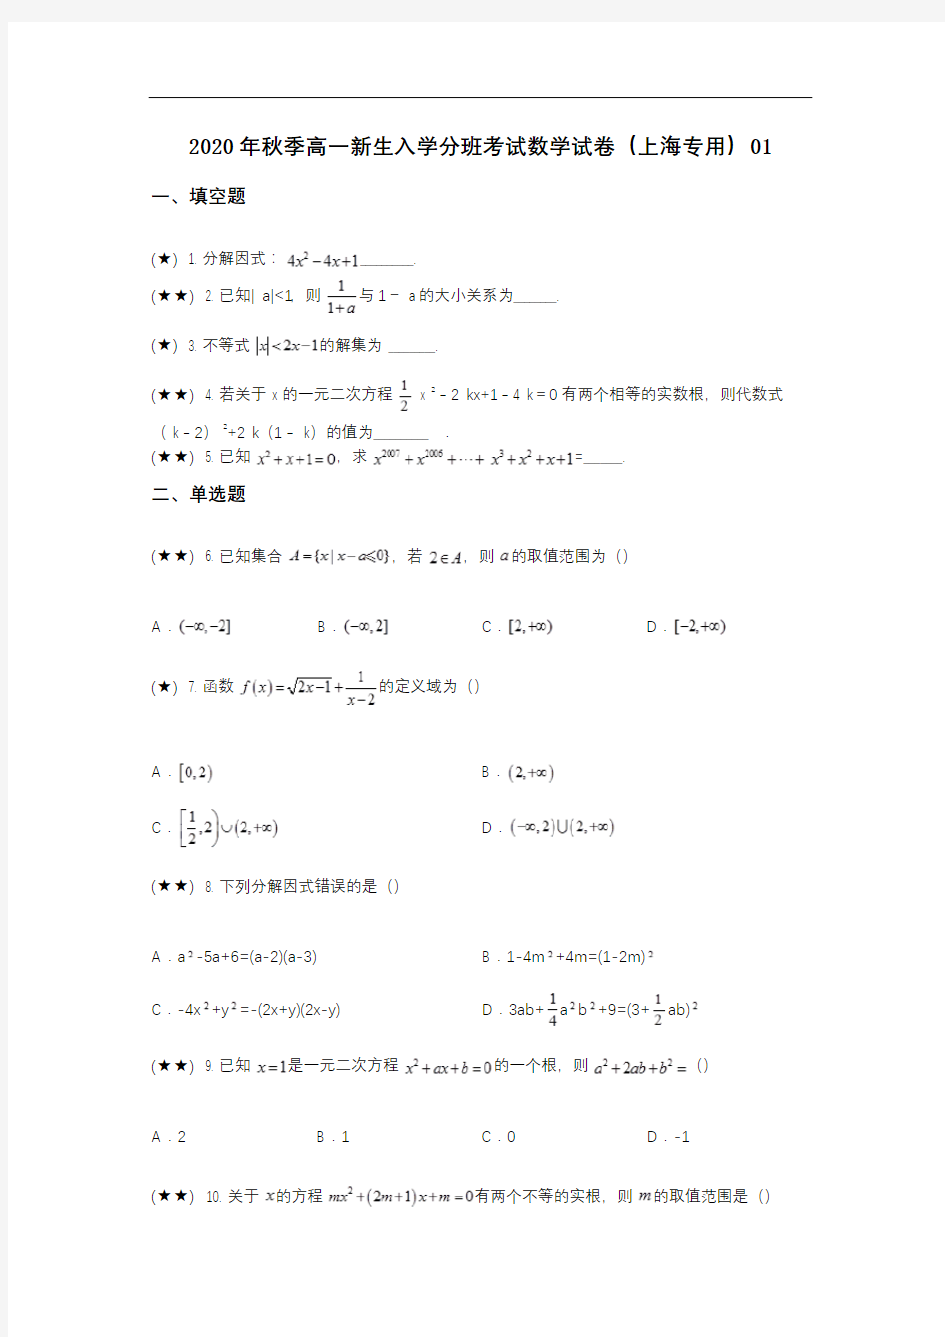 2020年秋季高一新生入学分班考试数学试卷(上海专用)01(wd无答案)